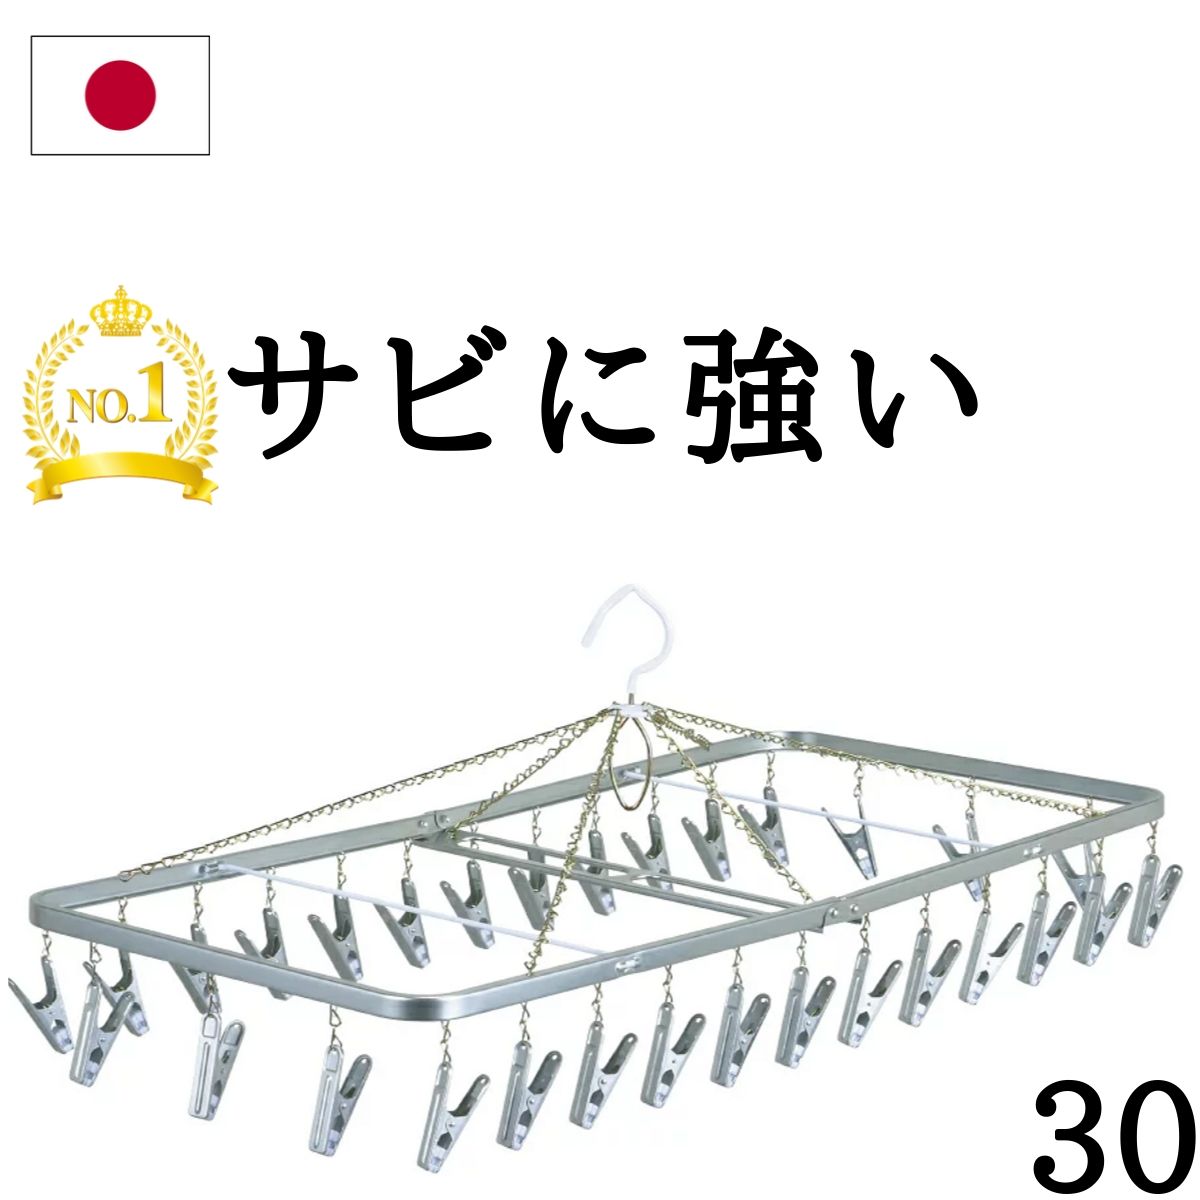 ★あす楽★ ピンチハンガー 日本製 30ピンチ 洗濯ハンガー【送料無料】ステンレス より軽い スチール製 浴室乾燥機 ピ…